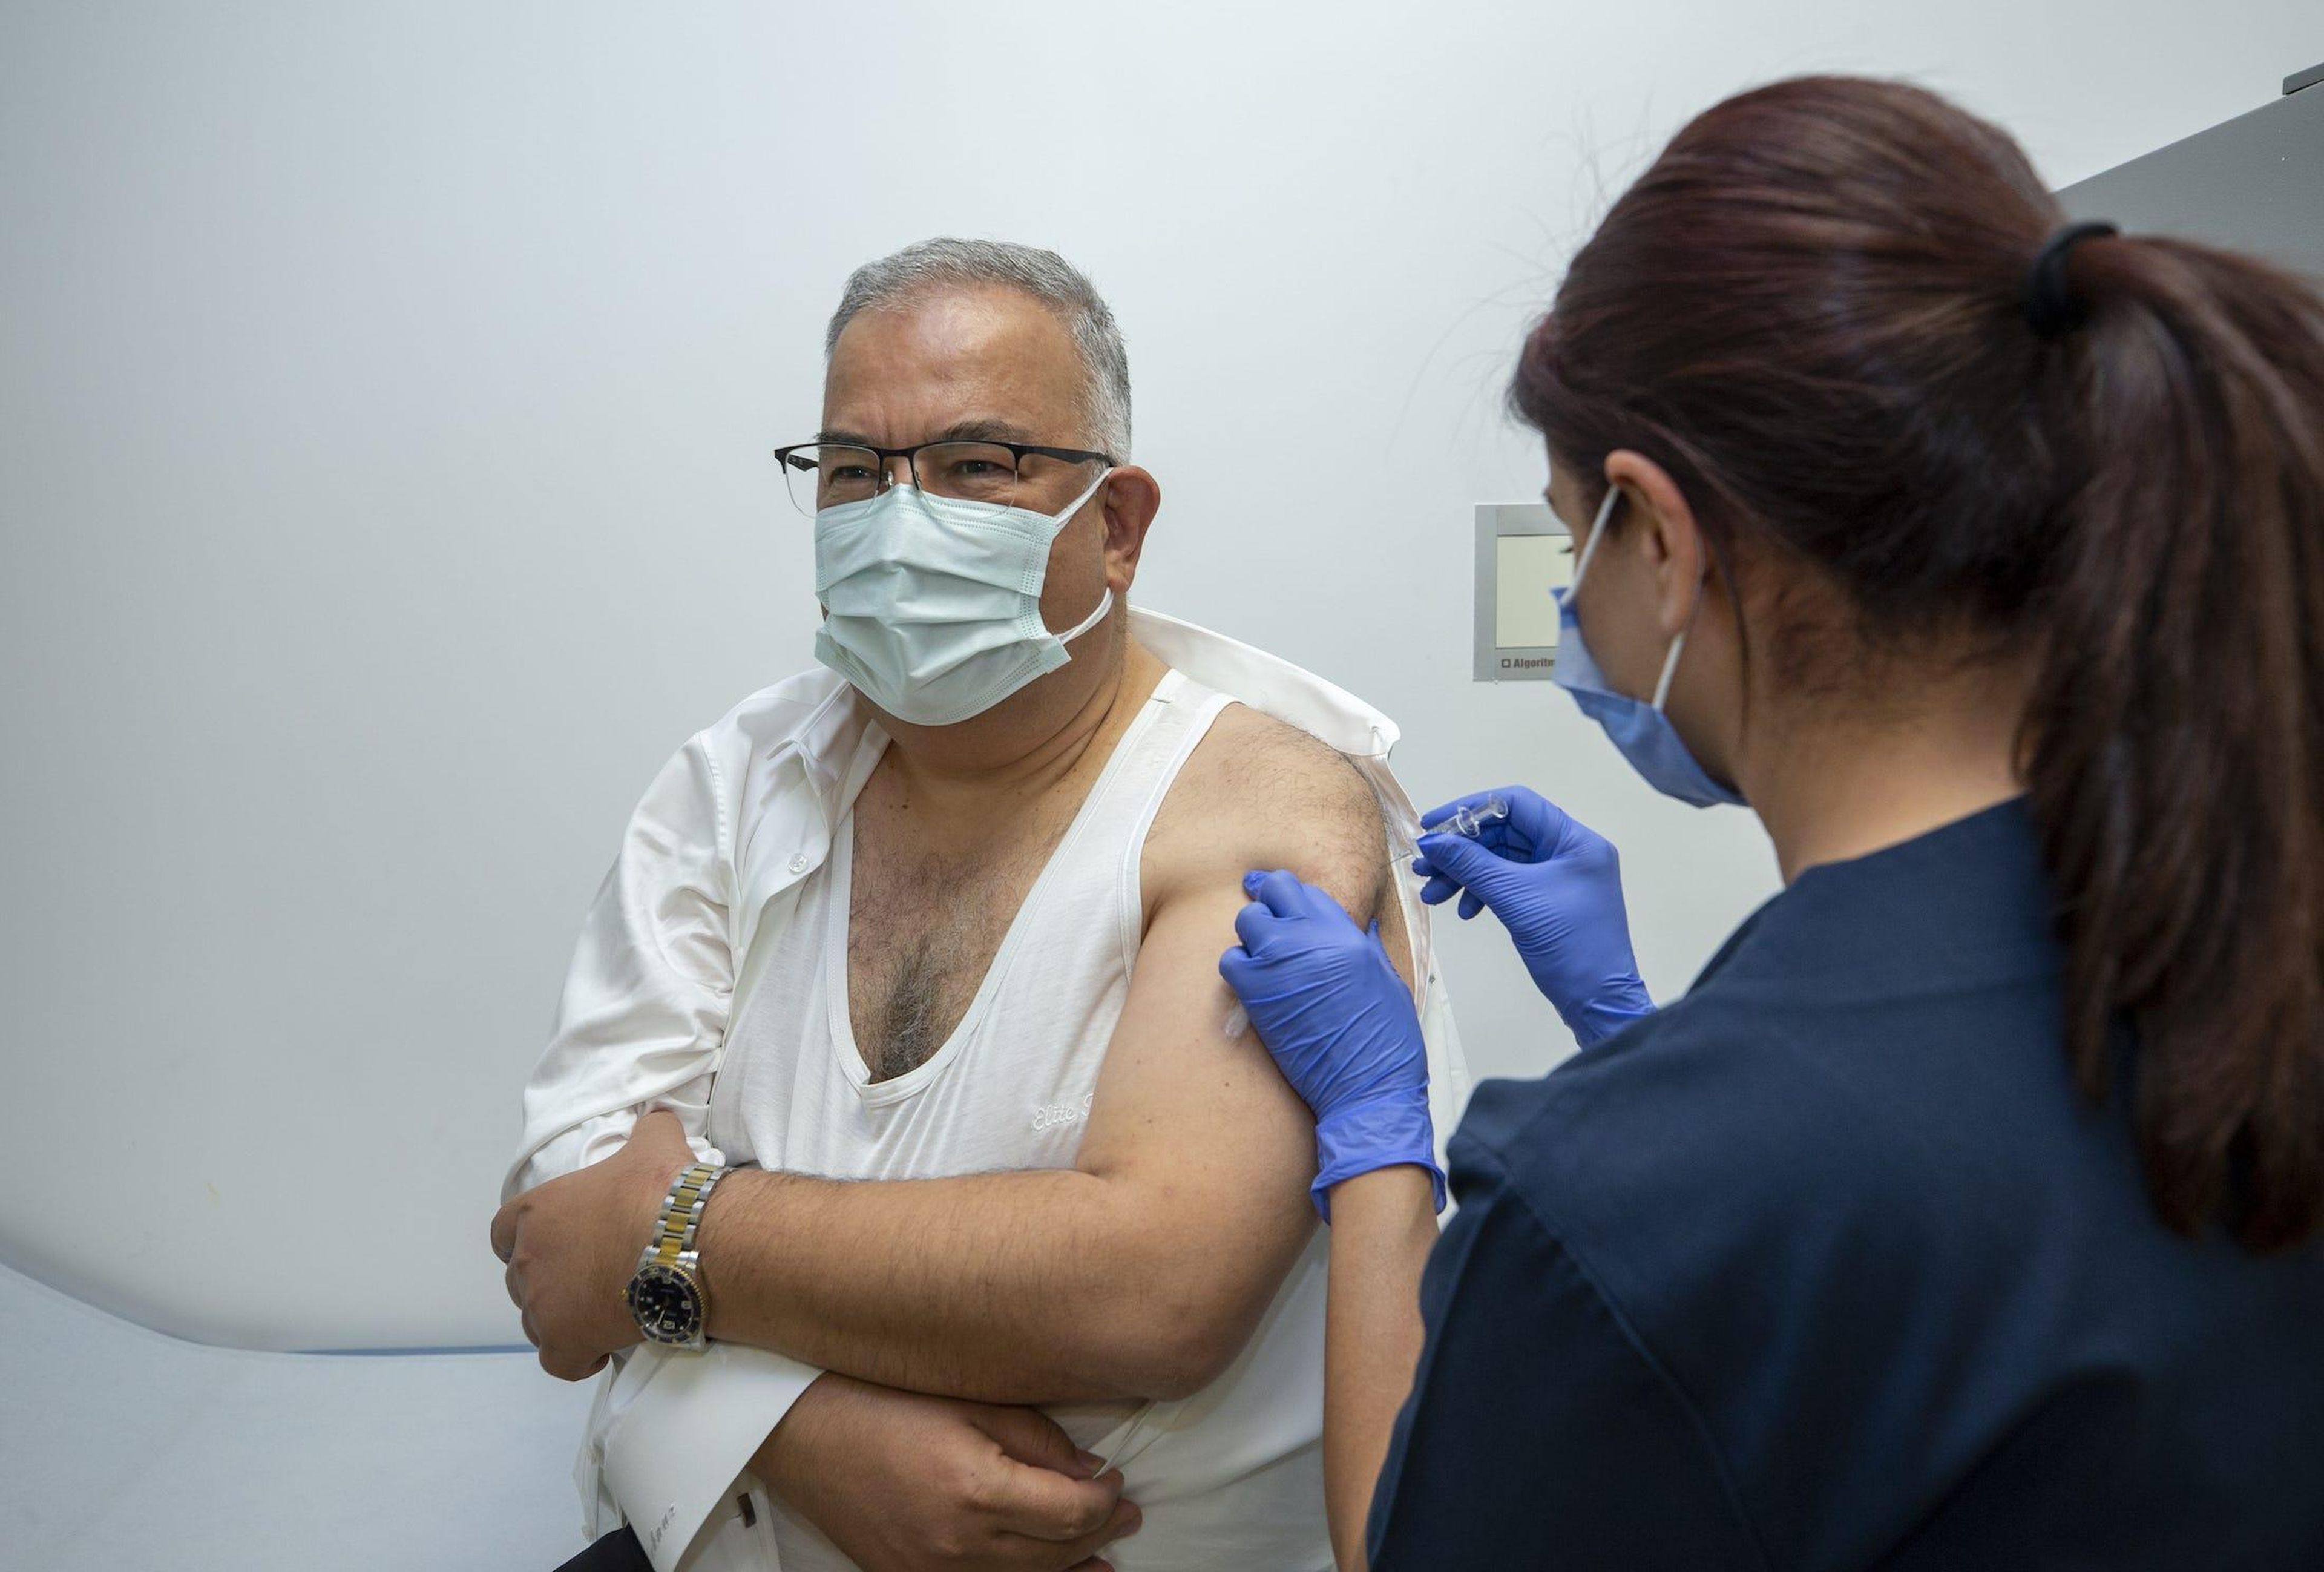 El Dr. Mustafa Gerek participa en un ensayo de la vacuna contra el coronavirus en el Hospital de la ciudad de Ankara en Ankara, Turquía, el 13 de octubre de 2020.